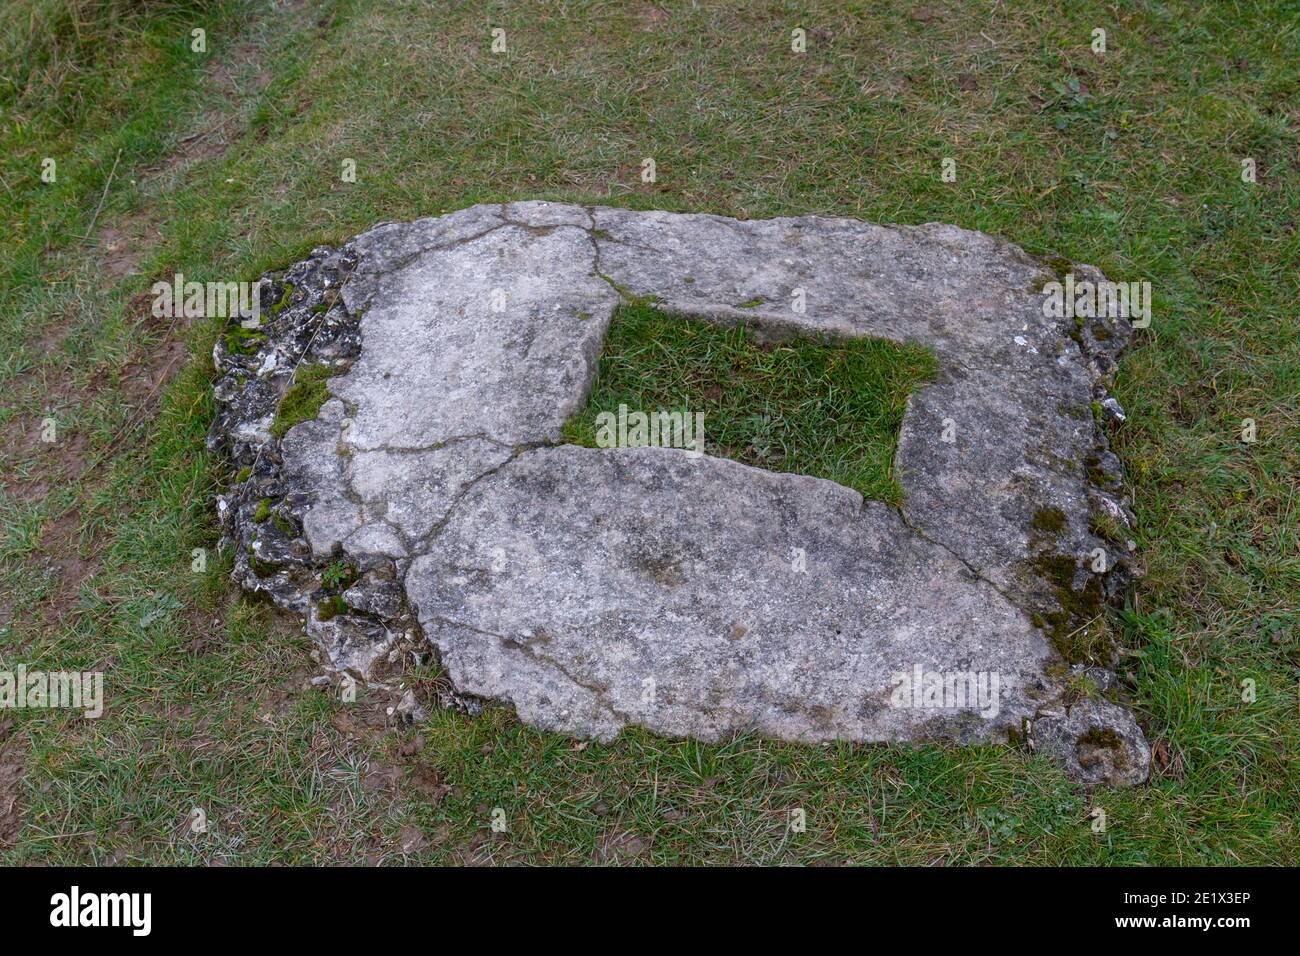 Base de concreto inusual en Figsbury Ring, un inusualmente diseñado iron Age Hill fort, que contiene un pequeño, posiblemente Neolítico, recinto, Wiltshire, Reino Unido. Foto de stock